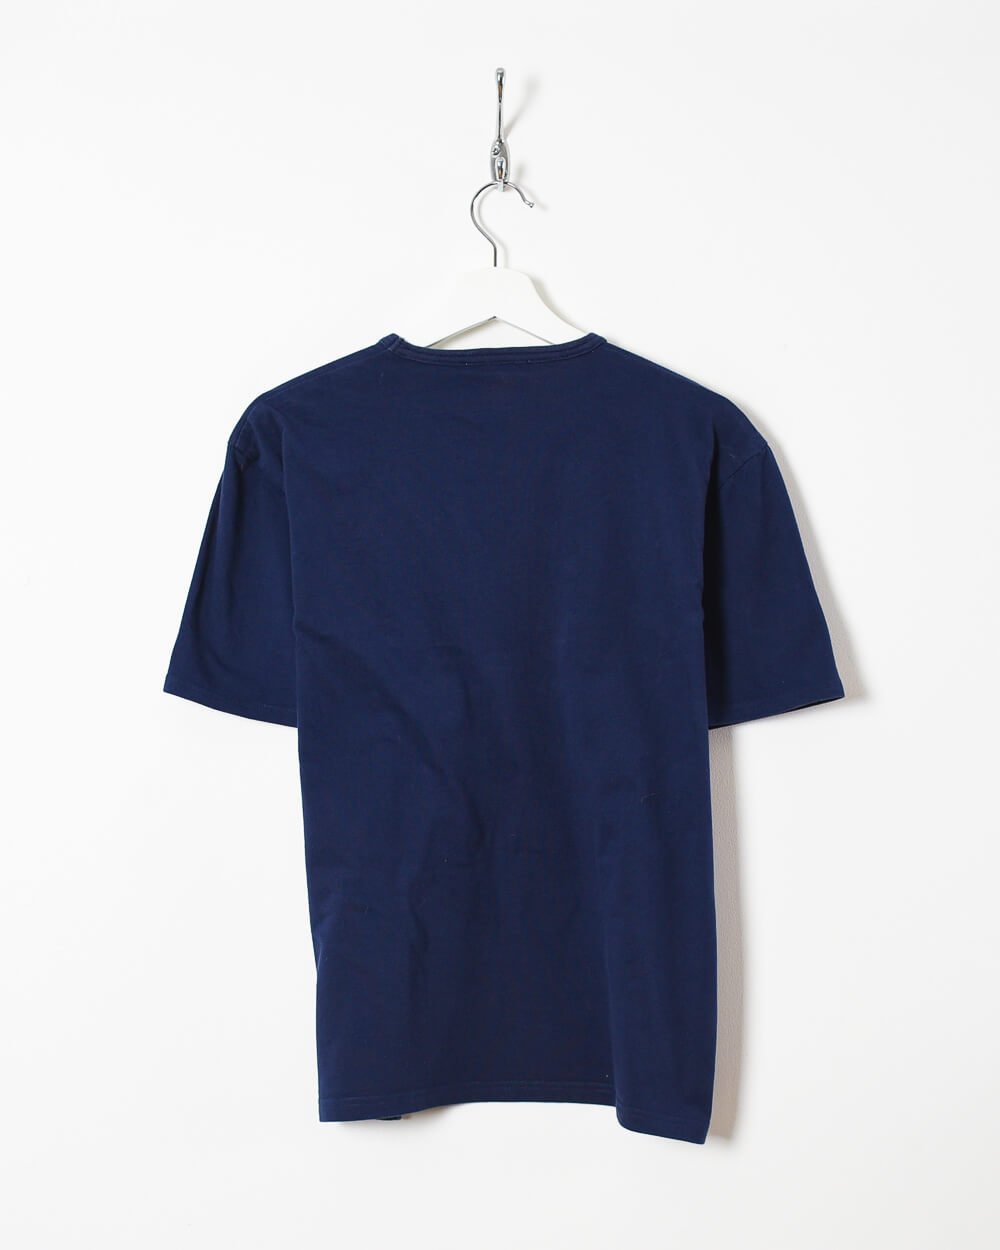 Navy Yves Saint Laurent T-Shirt - Medium